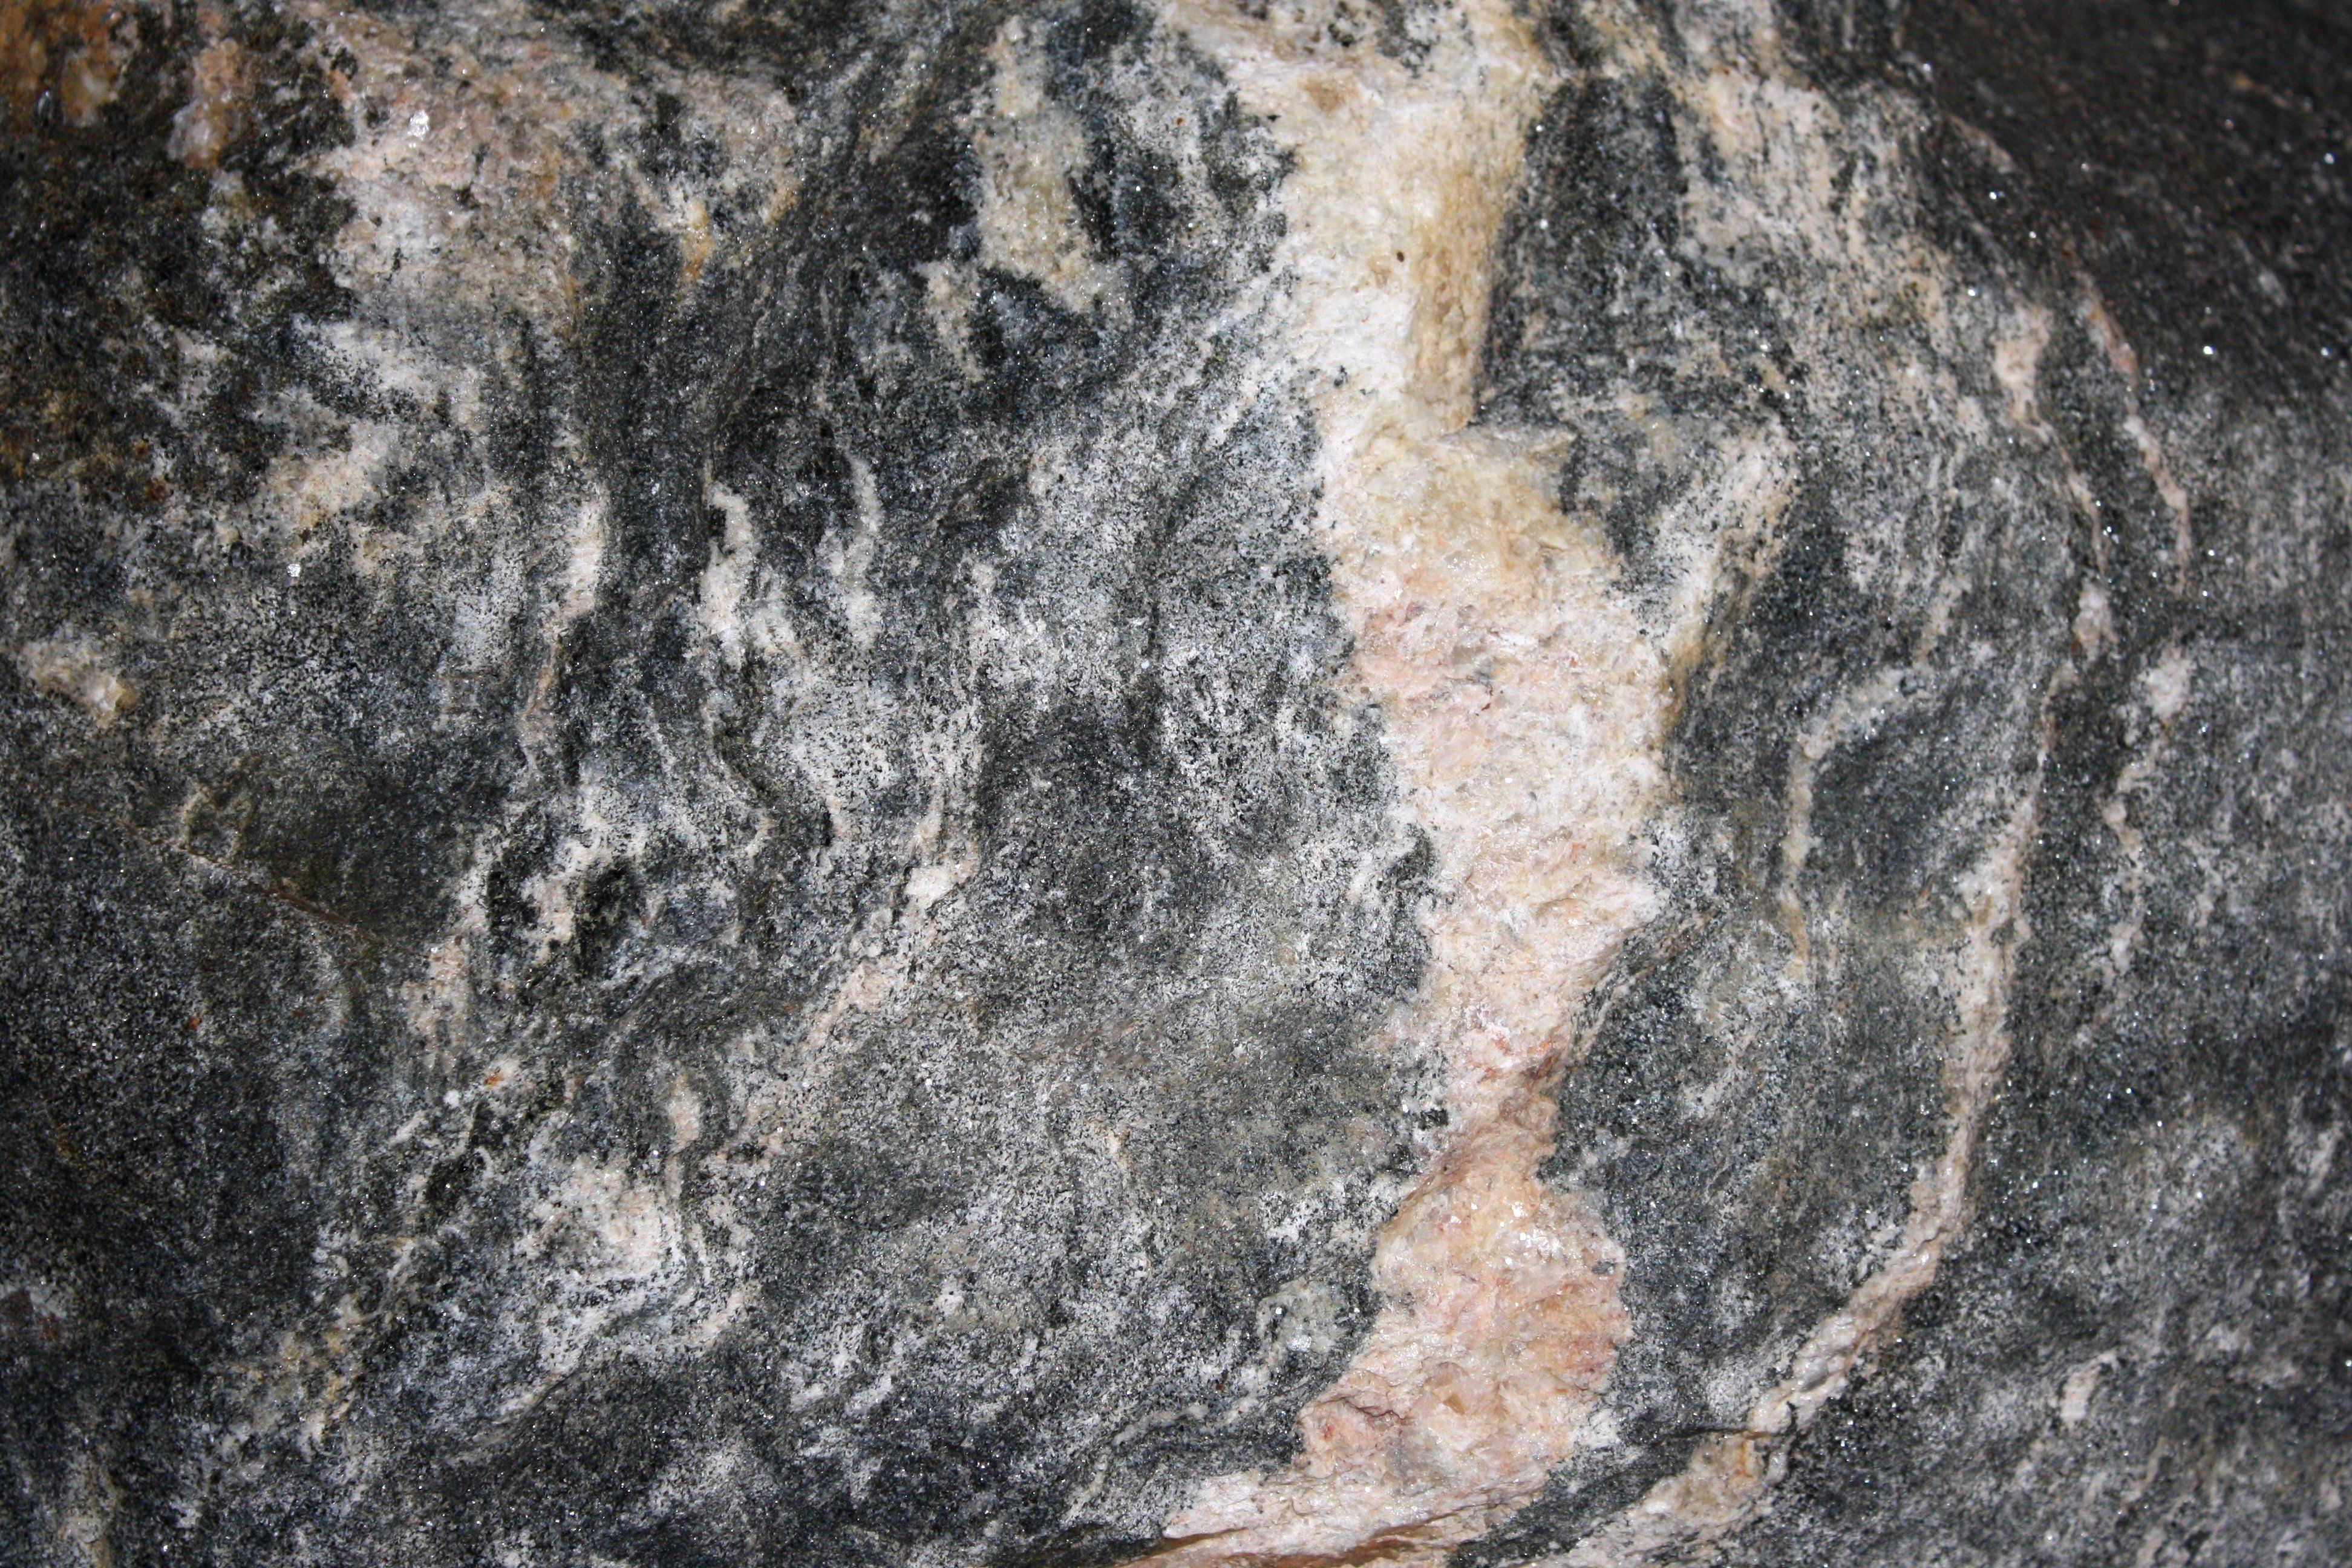 Mica Schist Metamorphic Rock Texture Picture. Free Photograph. Photo Public Domain